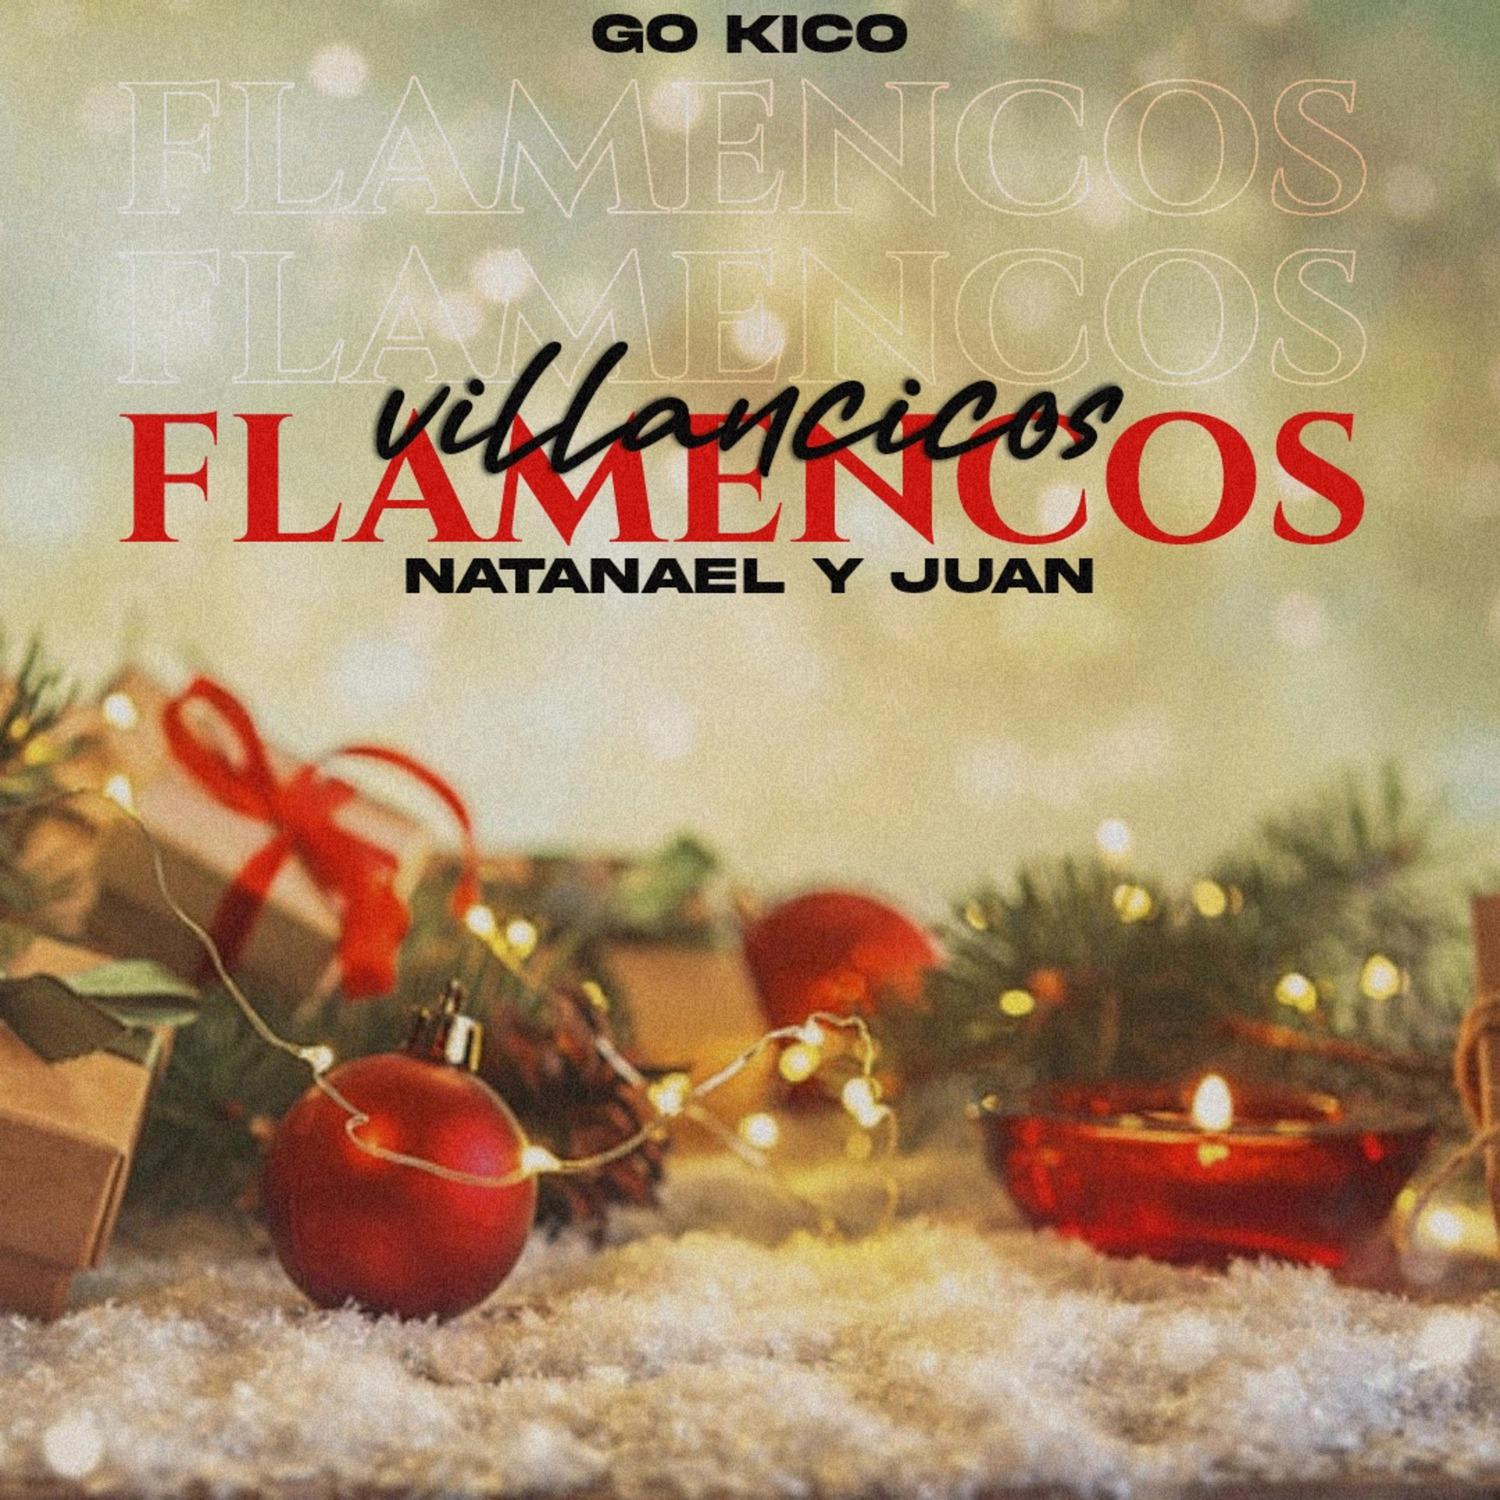 Go Kico - Villancicos Flamencos